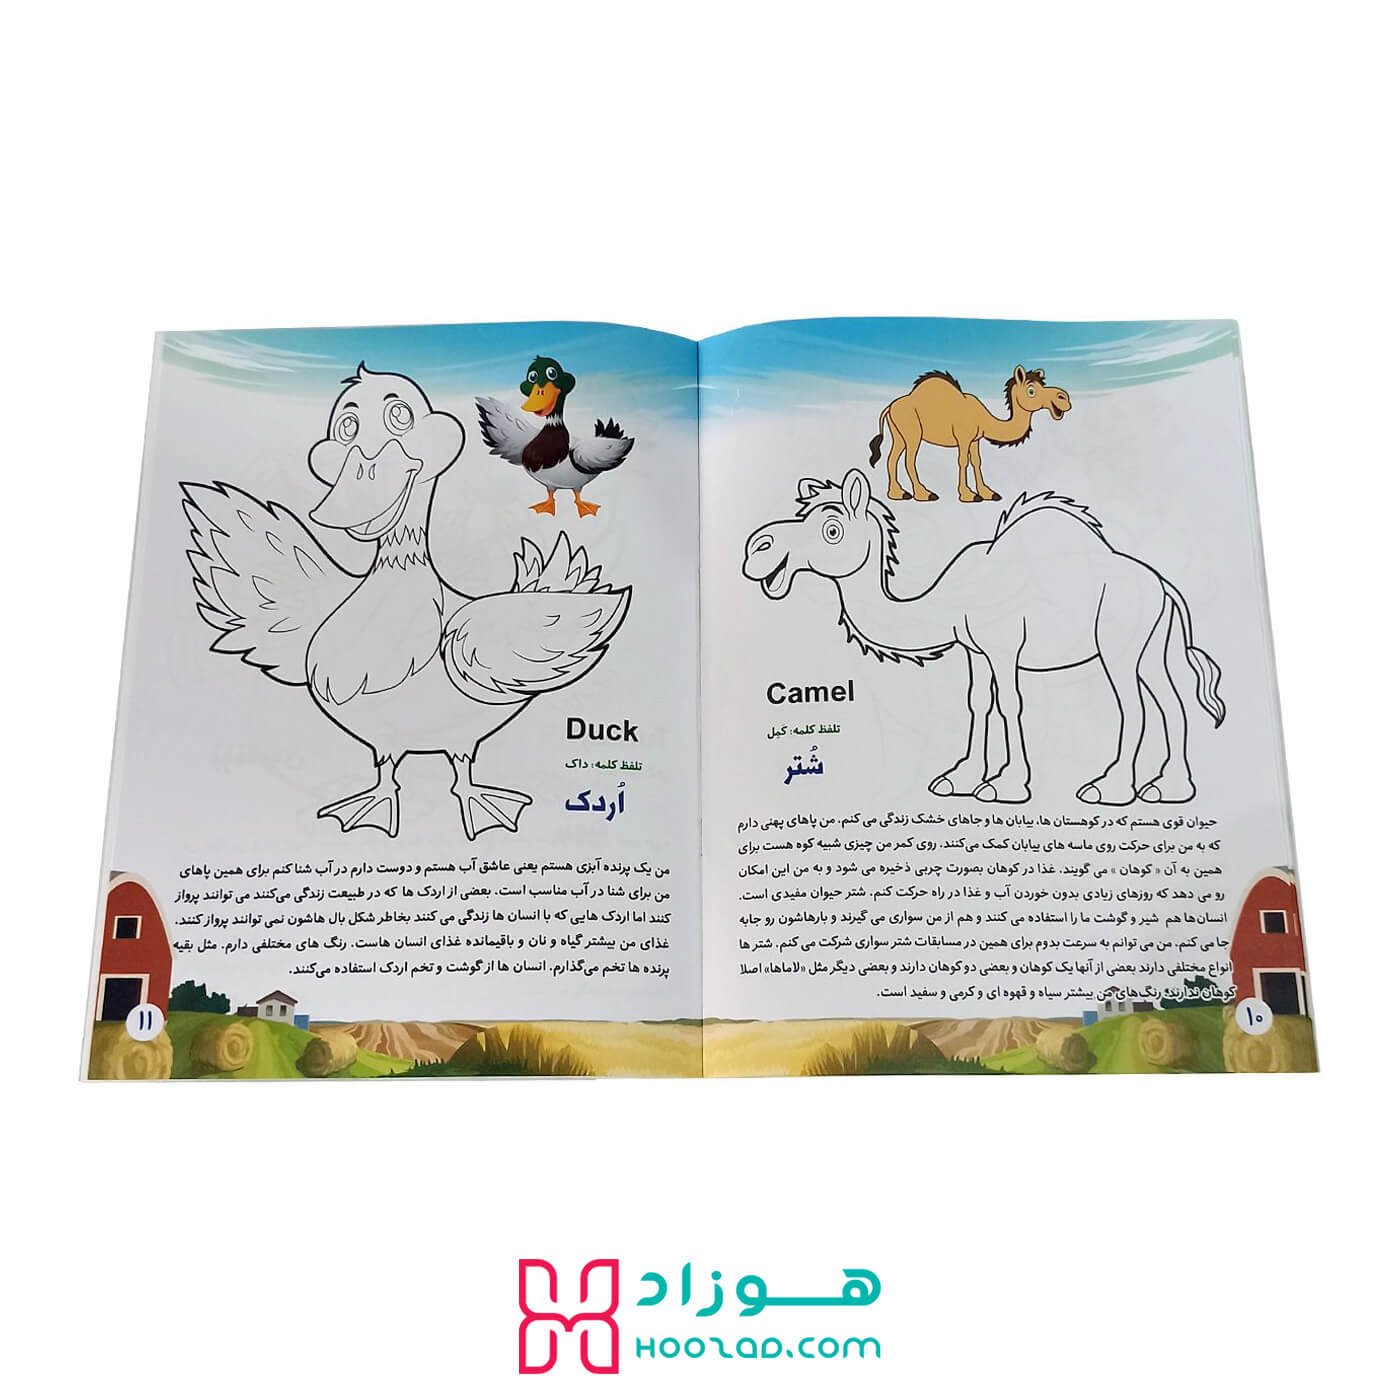 کتاب آموزش جادویی حیوانات اهلی نمونه صفحه کتاب